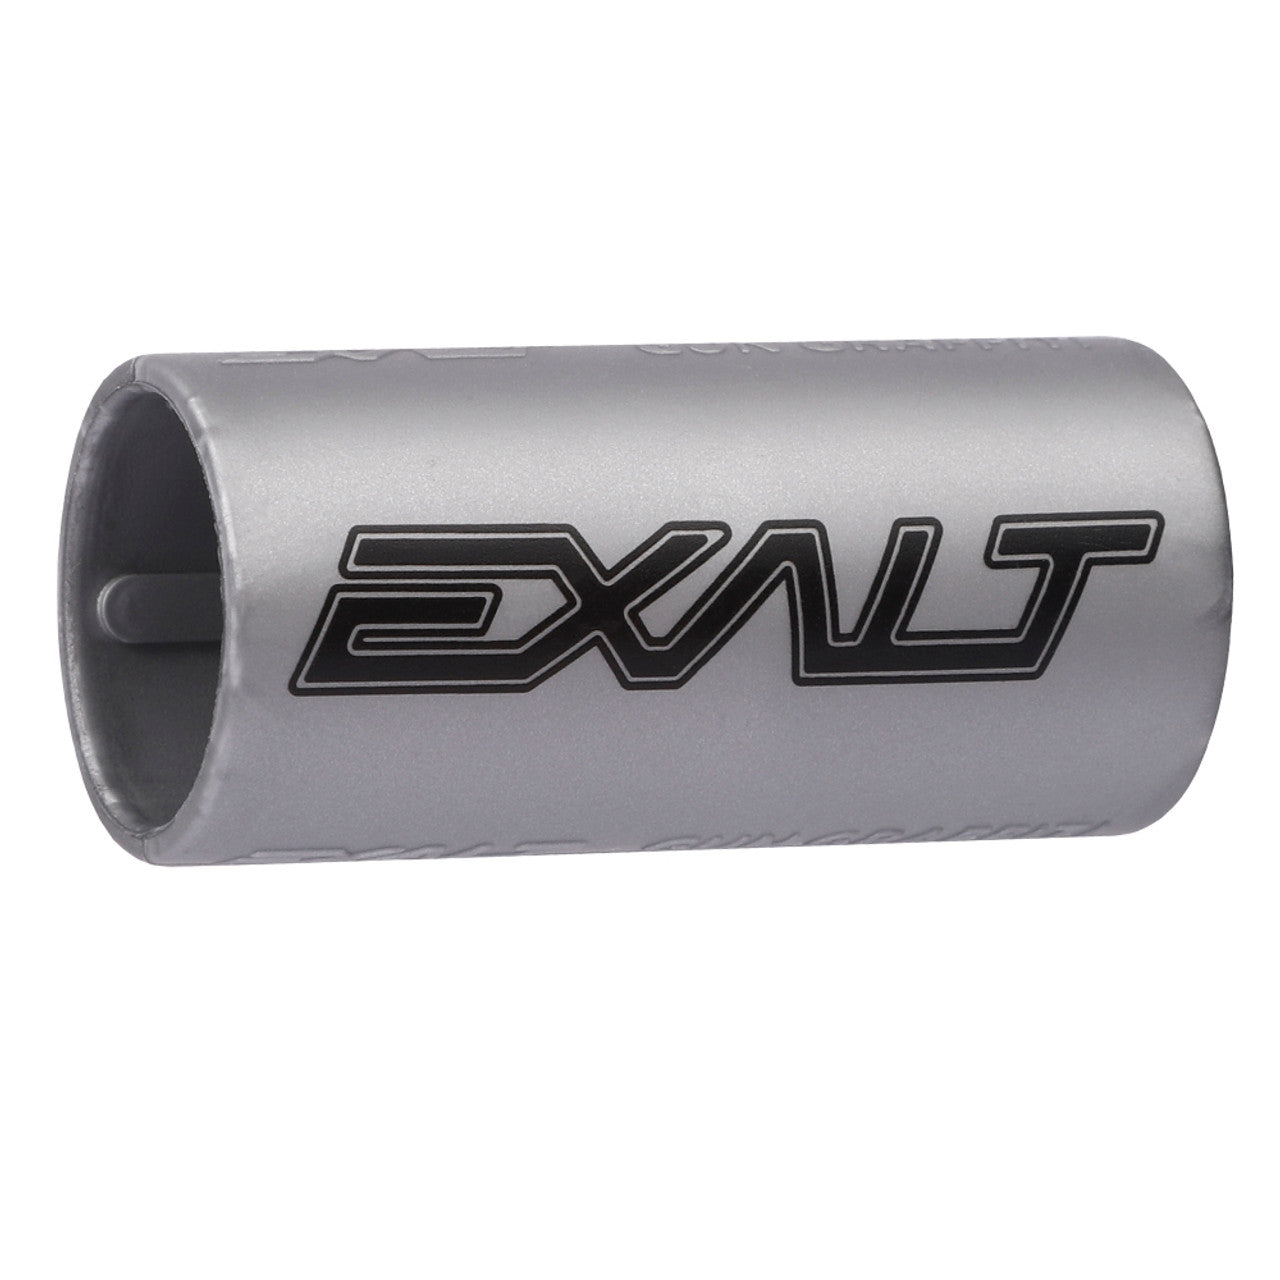 Exalt Gun Graffiti Band - Exalt Silver